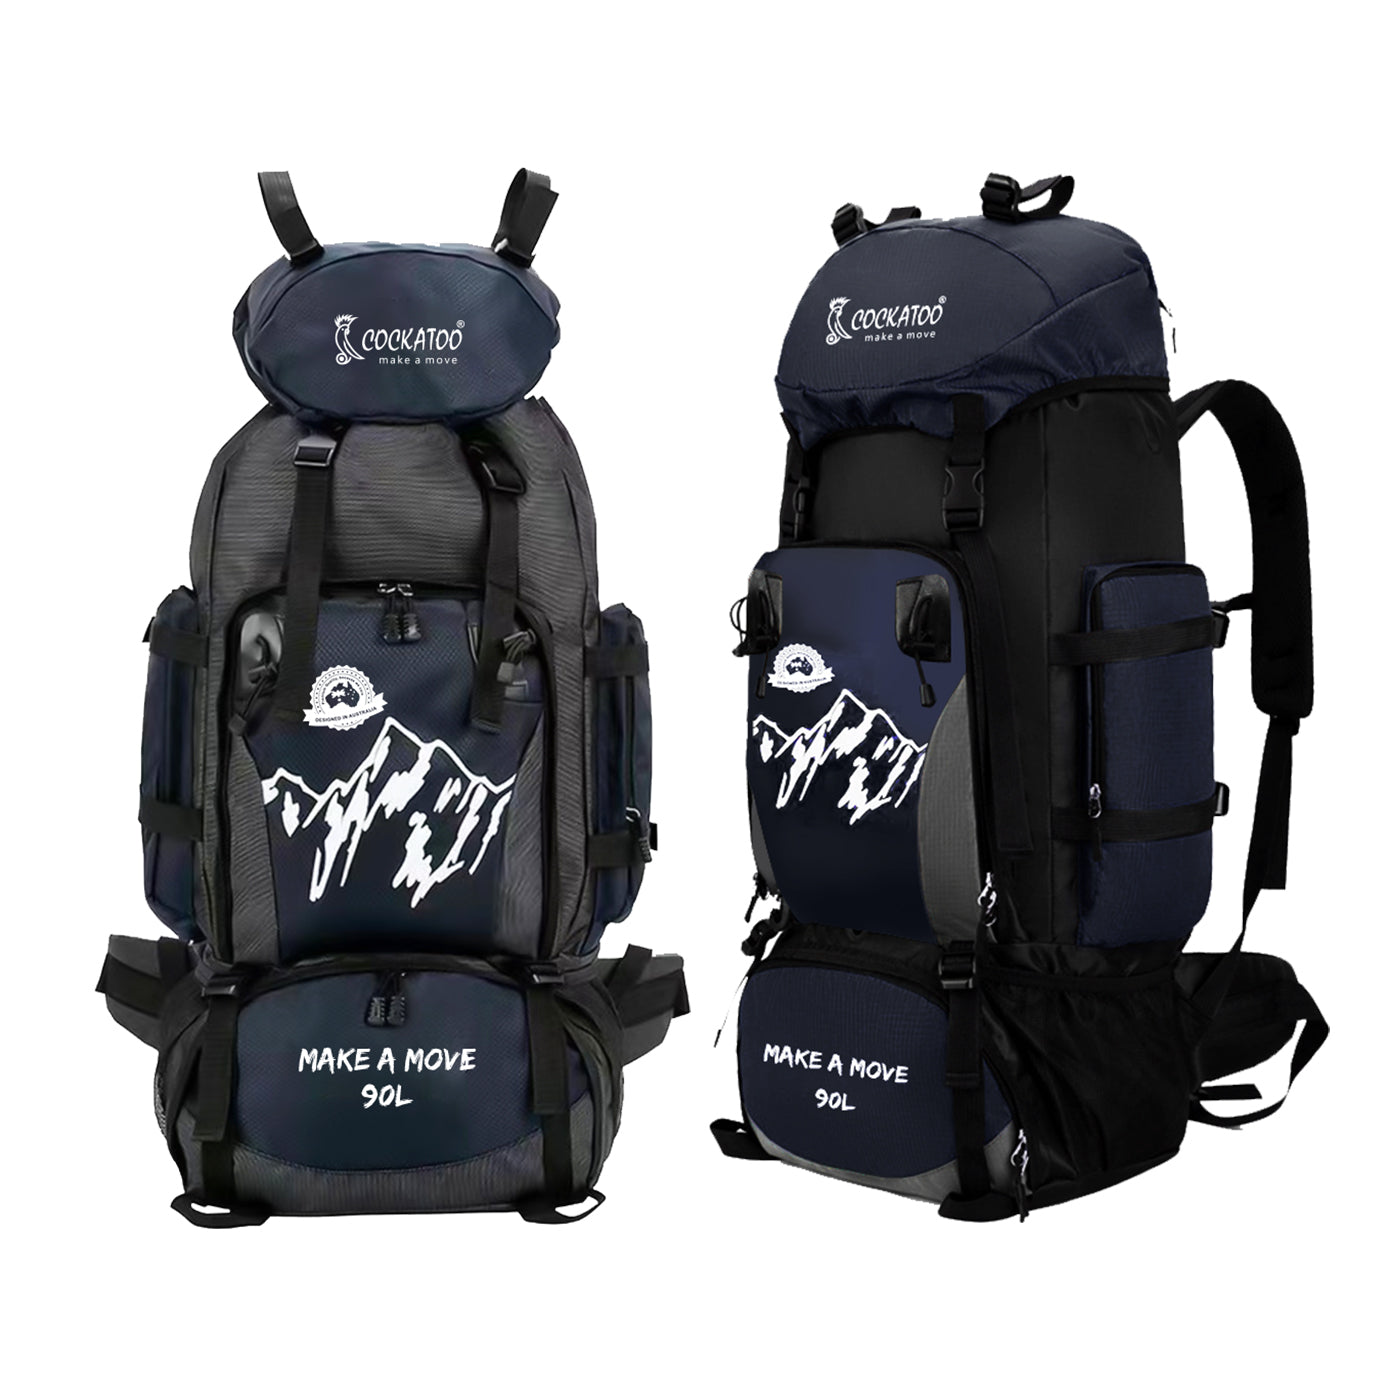 addixon 80 L travel hiking backpack rucksack bag, travel bag for adventures  rucksack - Navy Blue